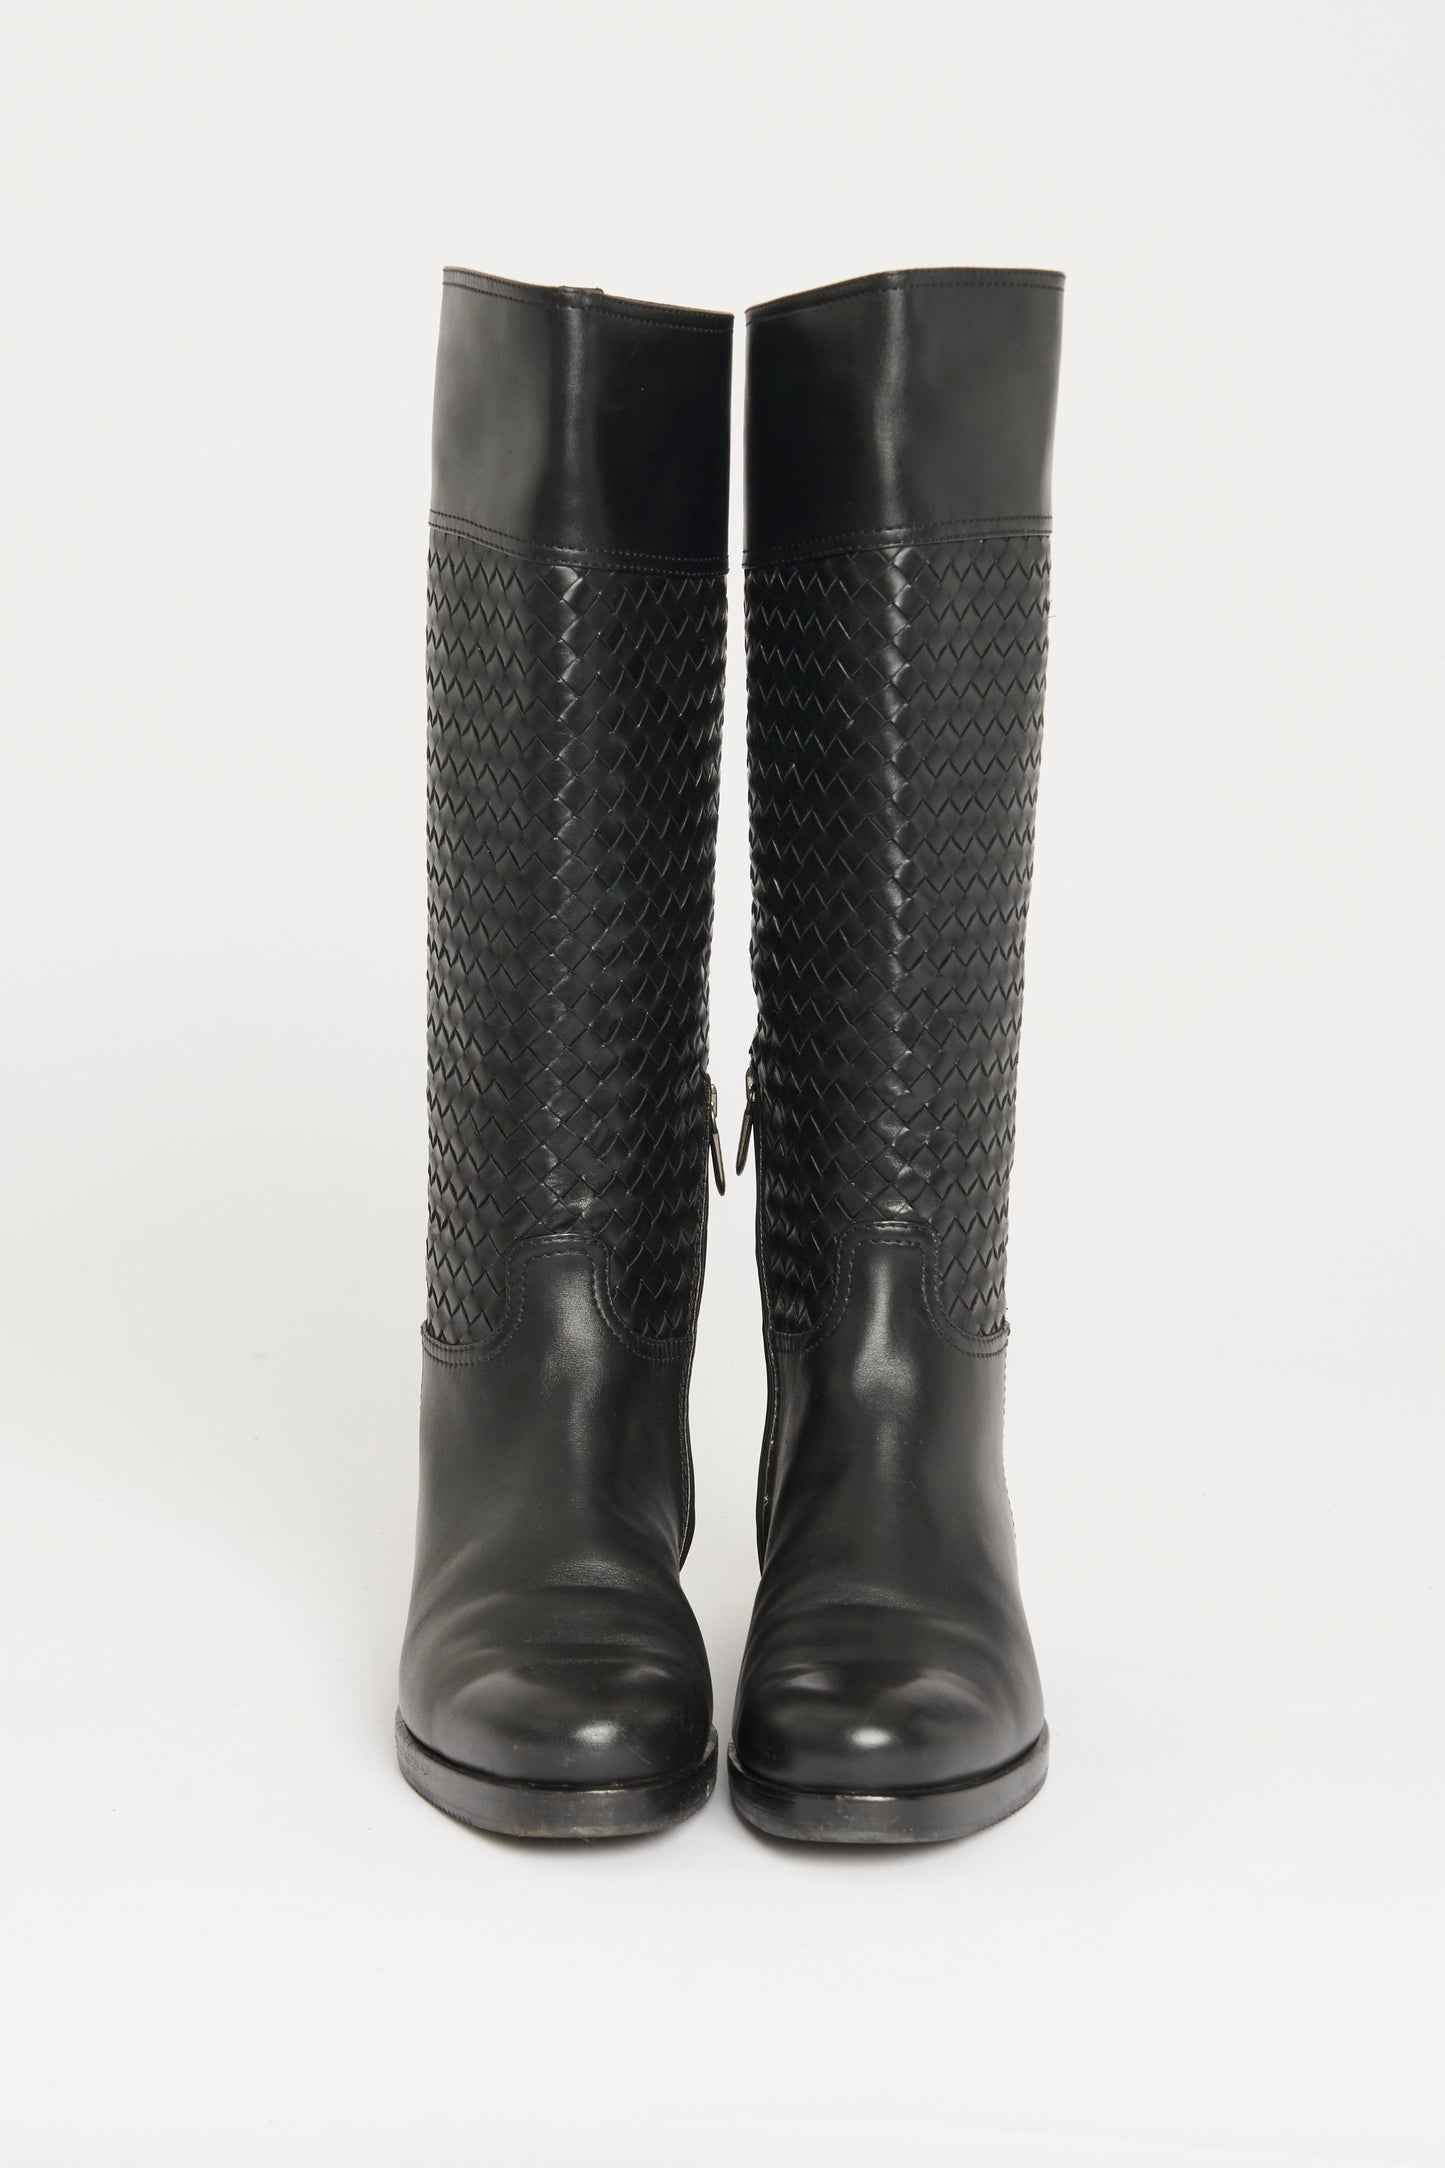 Black Leather Preowned Intrecciato Calf Boots